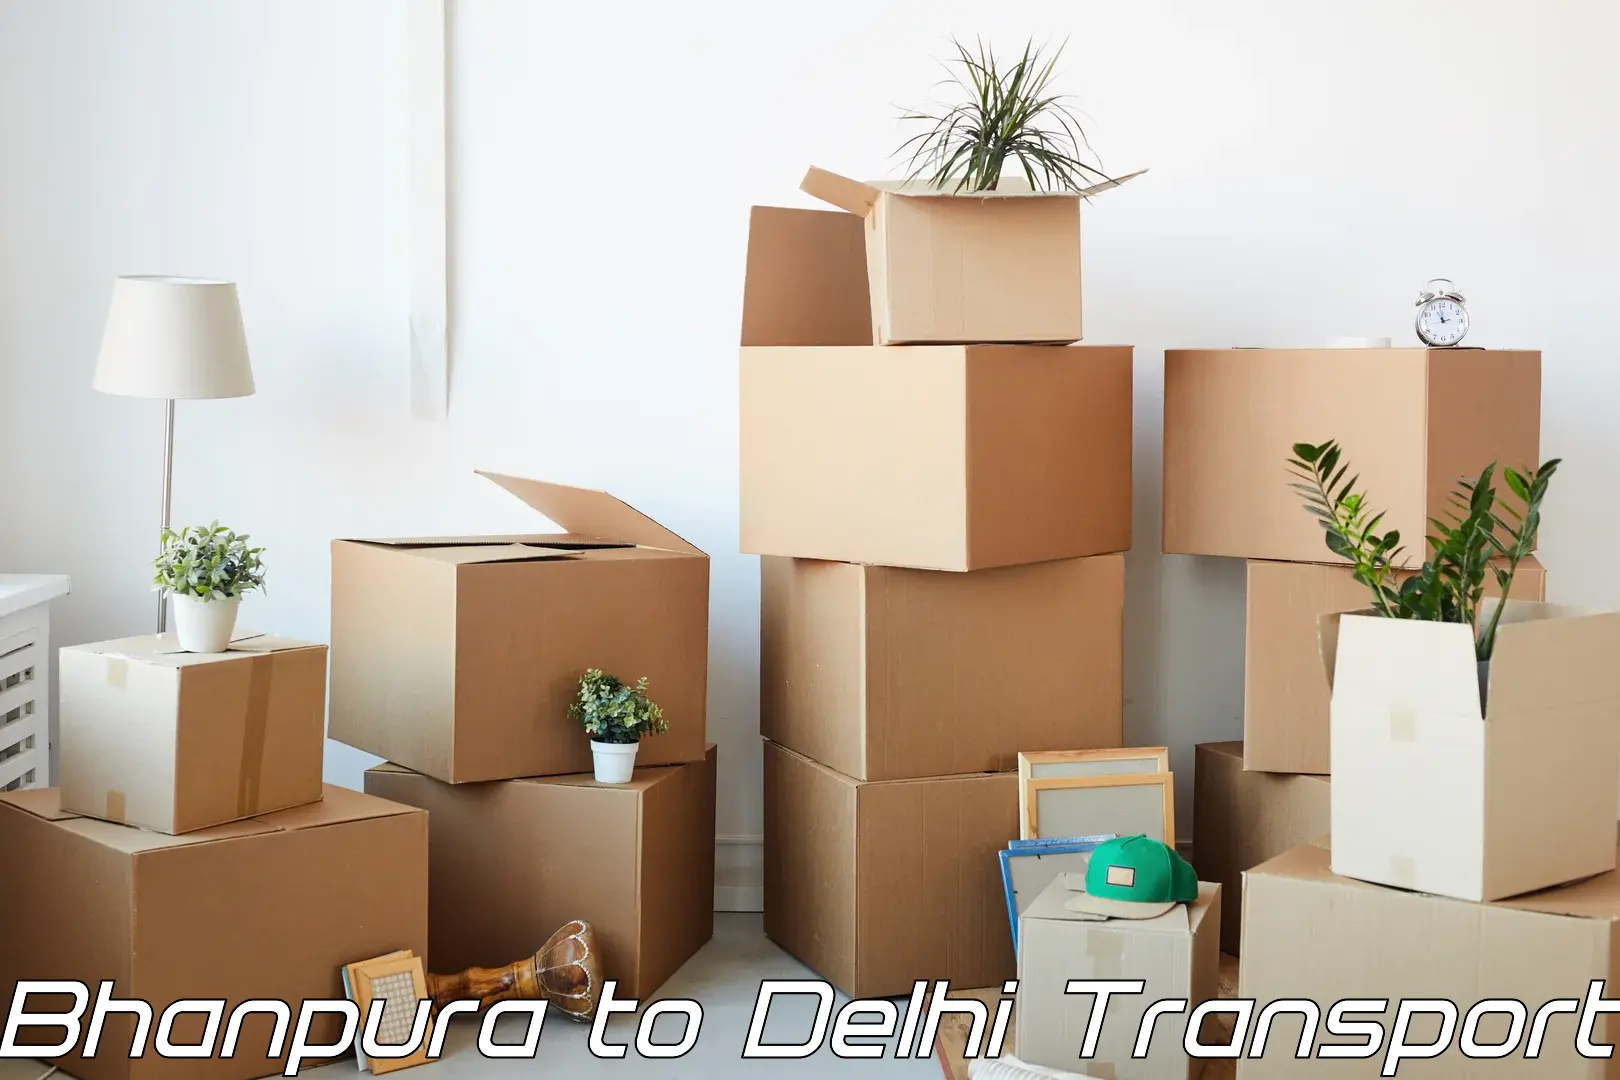 Transport in sharing Bhanpura to Jamia Millia Islamia New Delhi